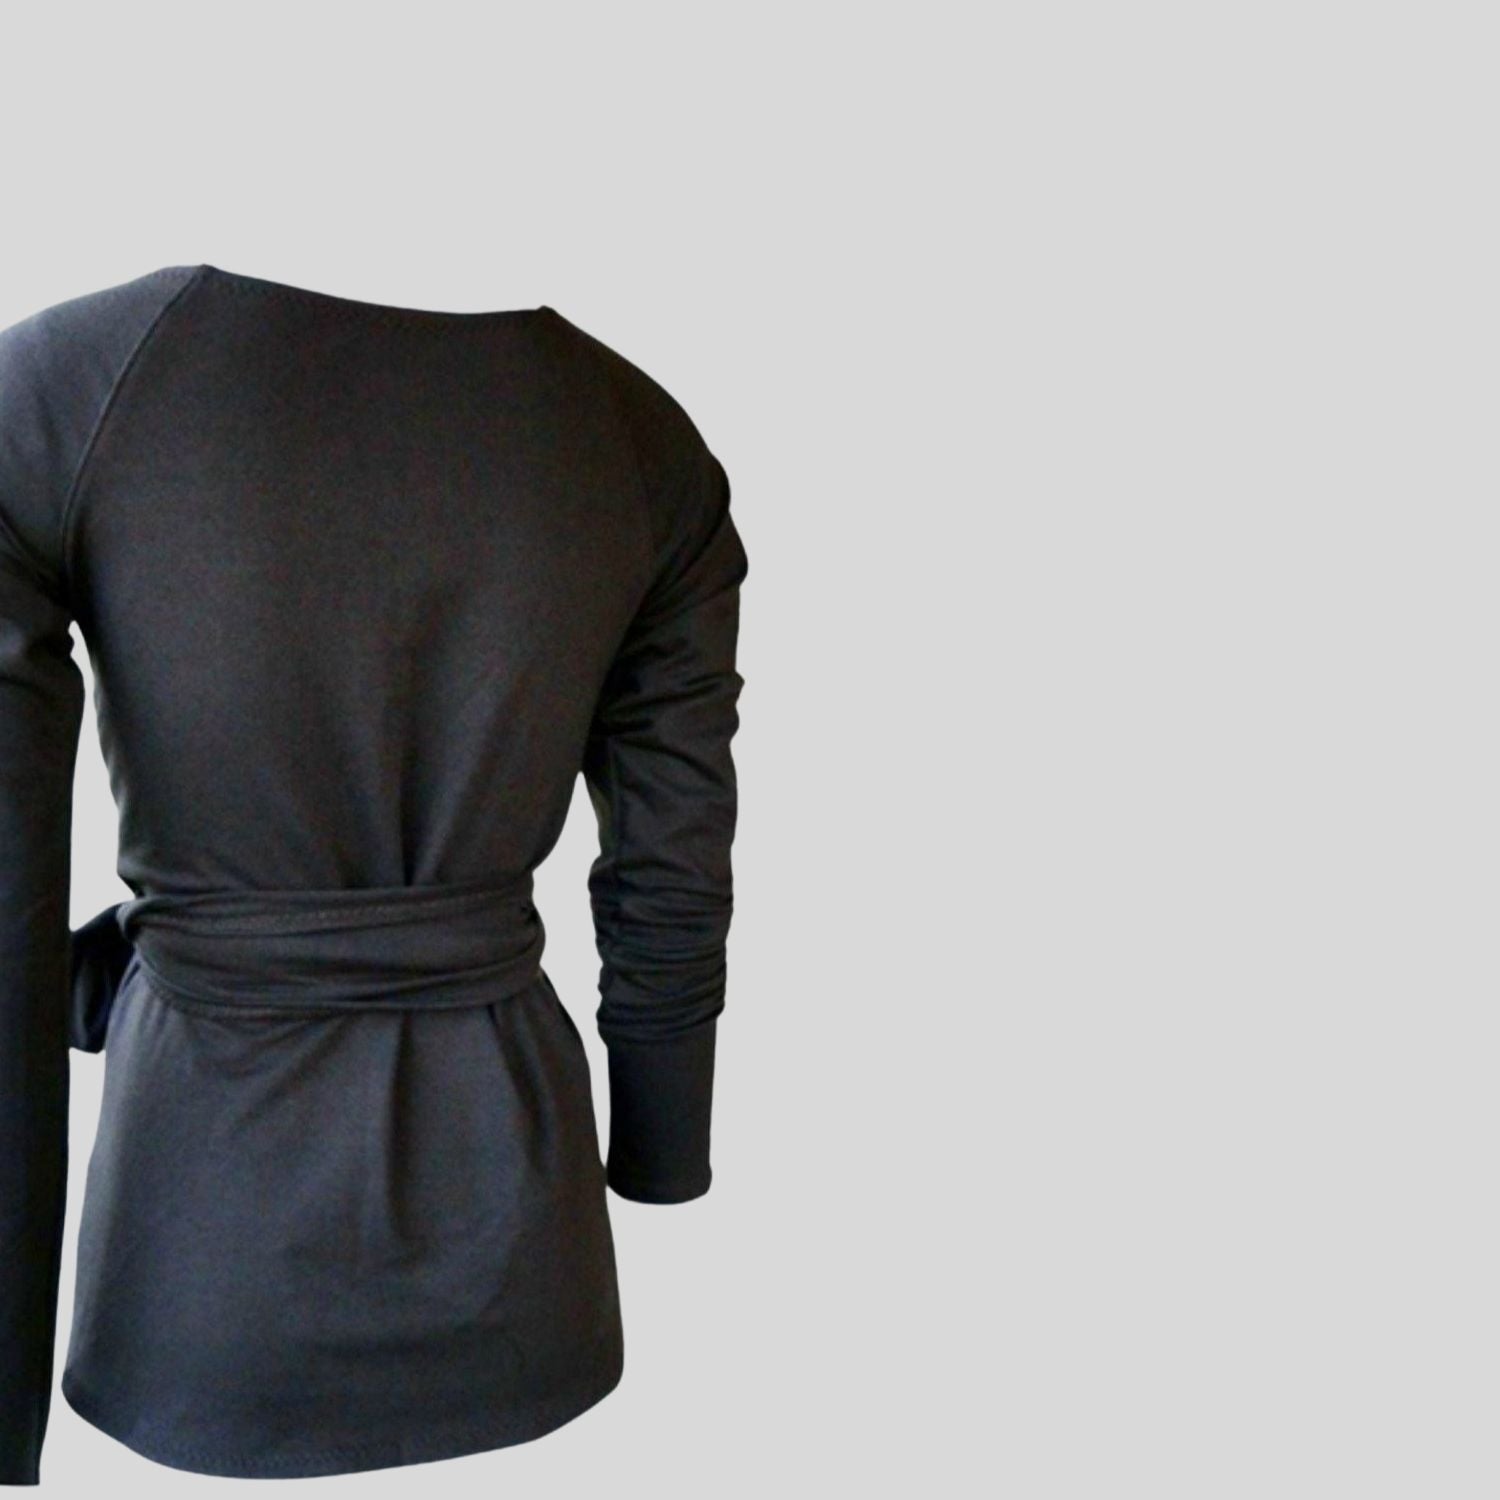 Buy Women's black wrap top | Shop made in Canada wrap shirts for women | Econica - organic women's clothing store